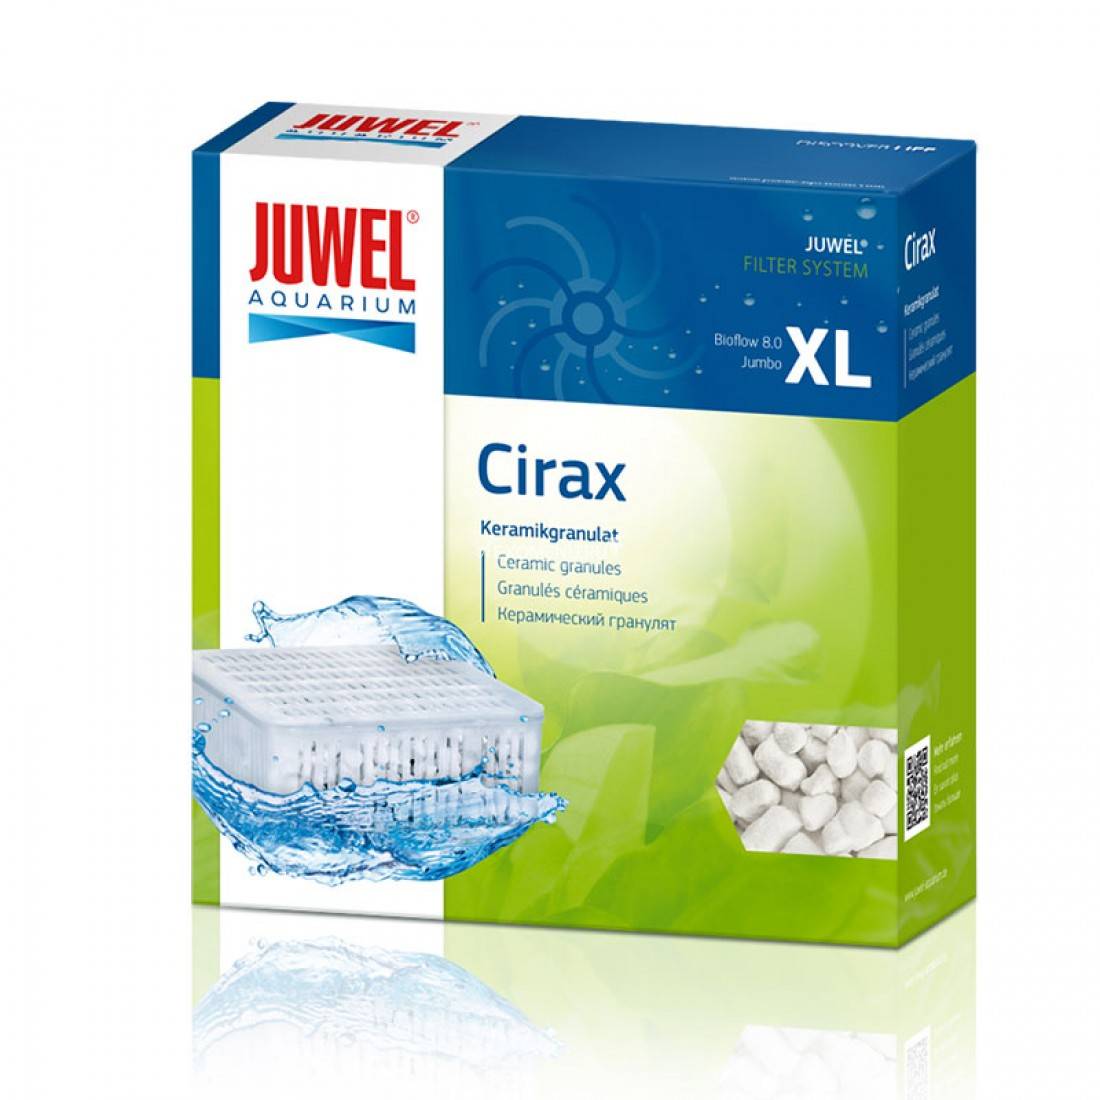 Субстрат Cirax размножение бактерий для фильтра Juwel Bioflow 8.0/Jumbo/XL (88156)